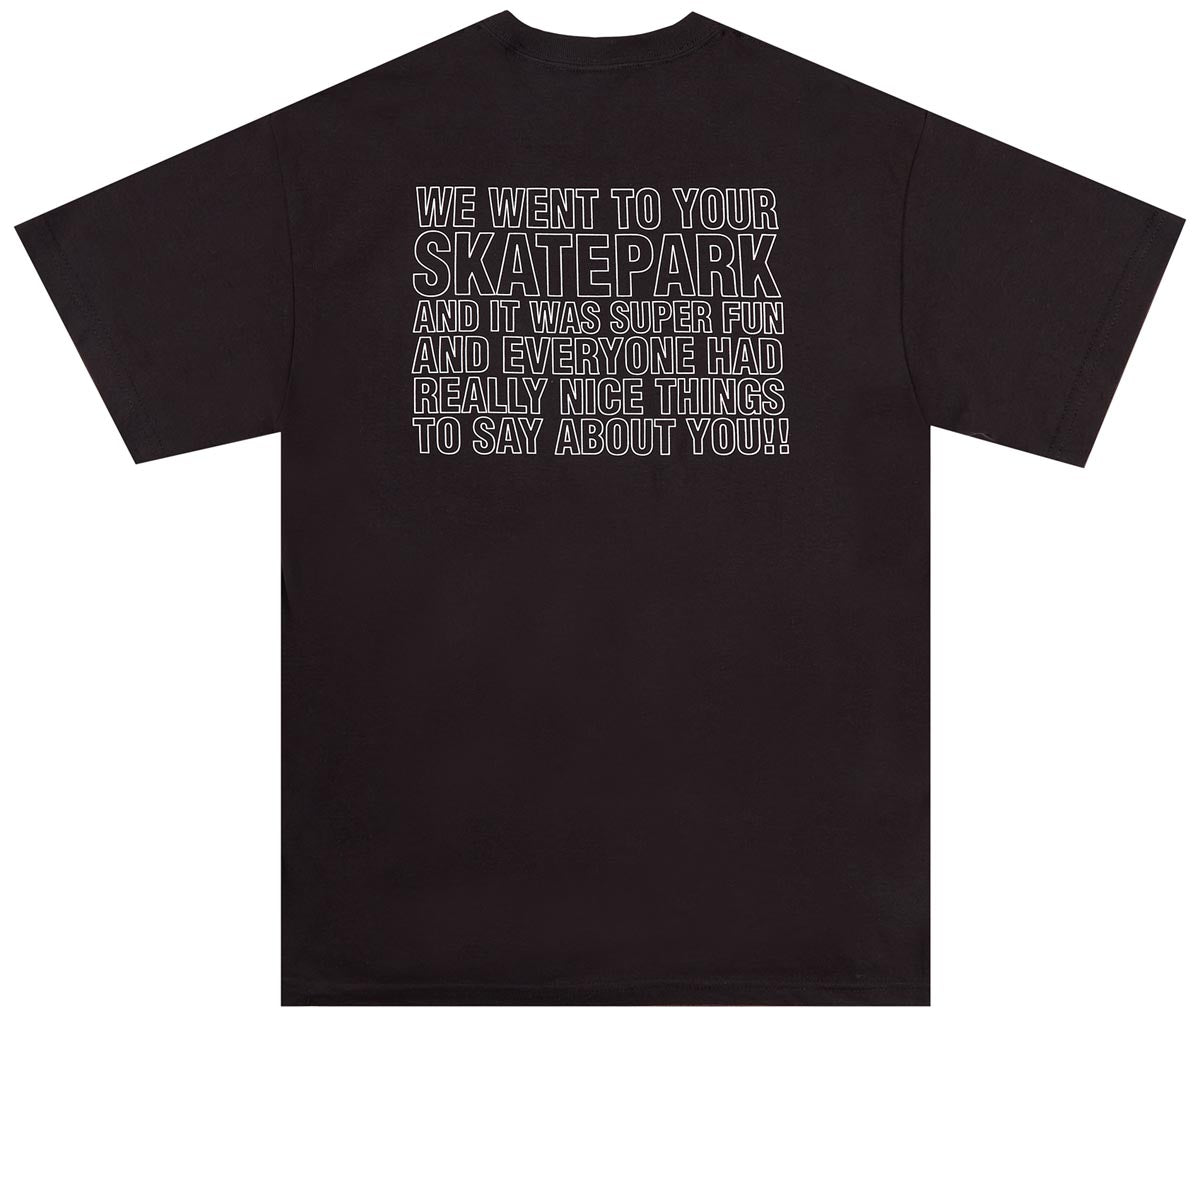 Alltimers x Bronze 56k Skatepark T-Shirt - Black image 1